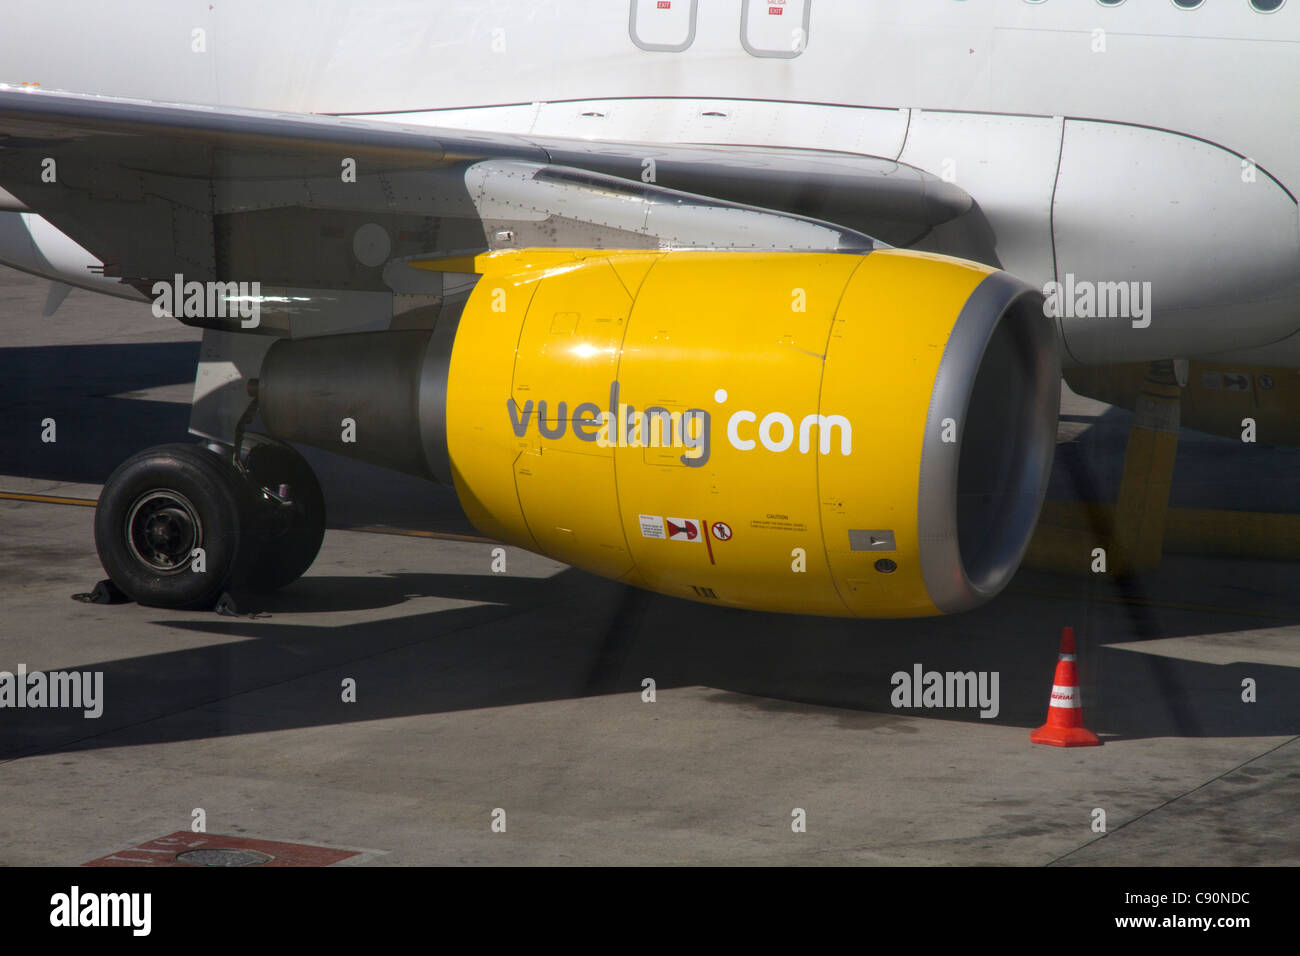 Vueling segno sul motore aereo, Vueling a basso costo moderno brand della compagnia aerea Iberia Spagna Foto Stock